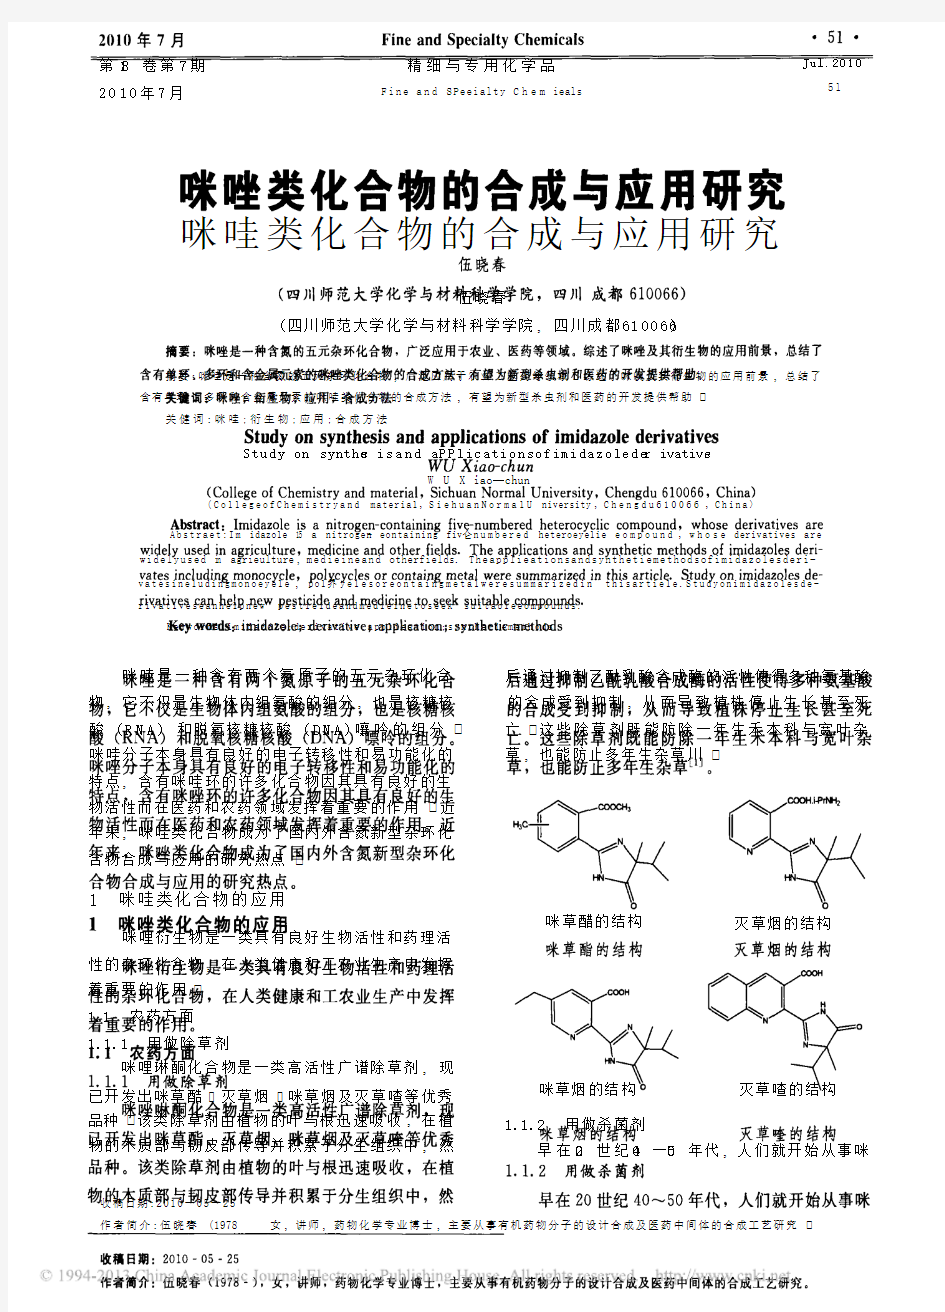 咪唑类化合物的合成与应用研究